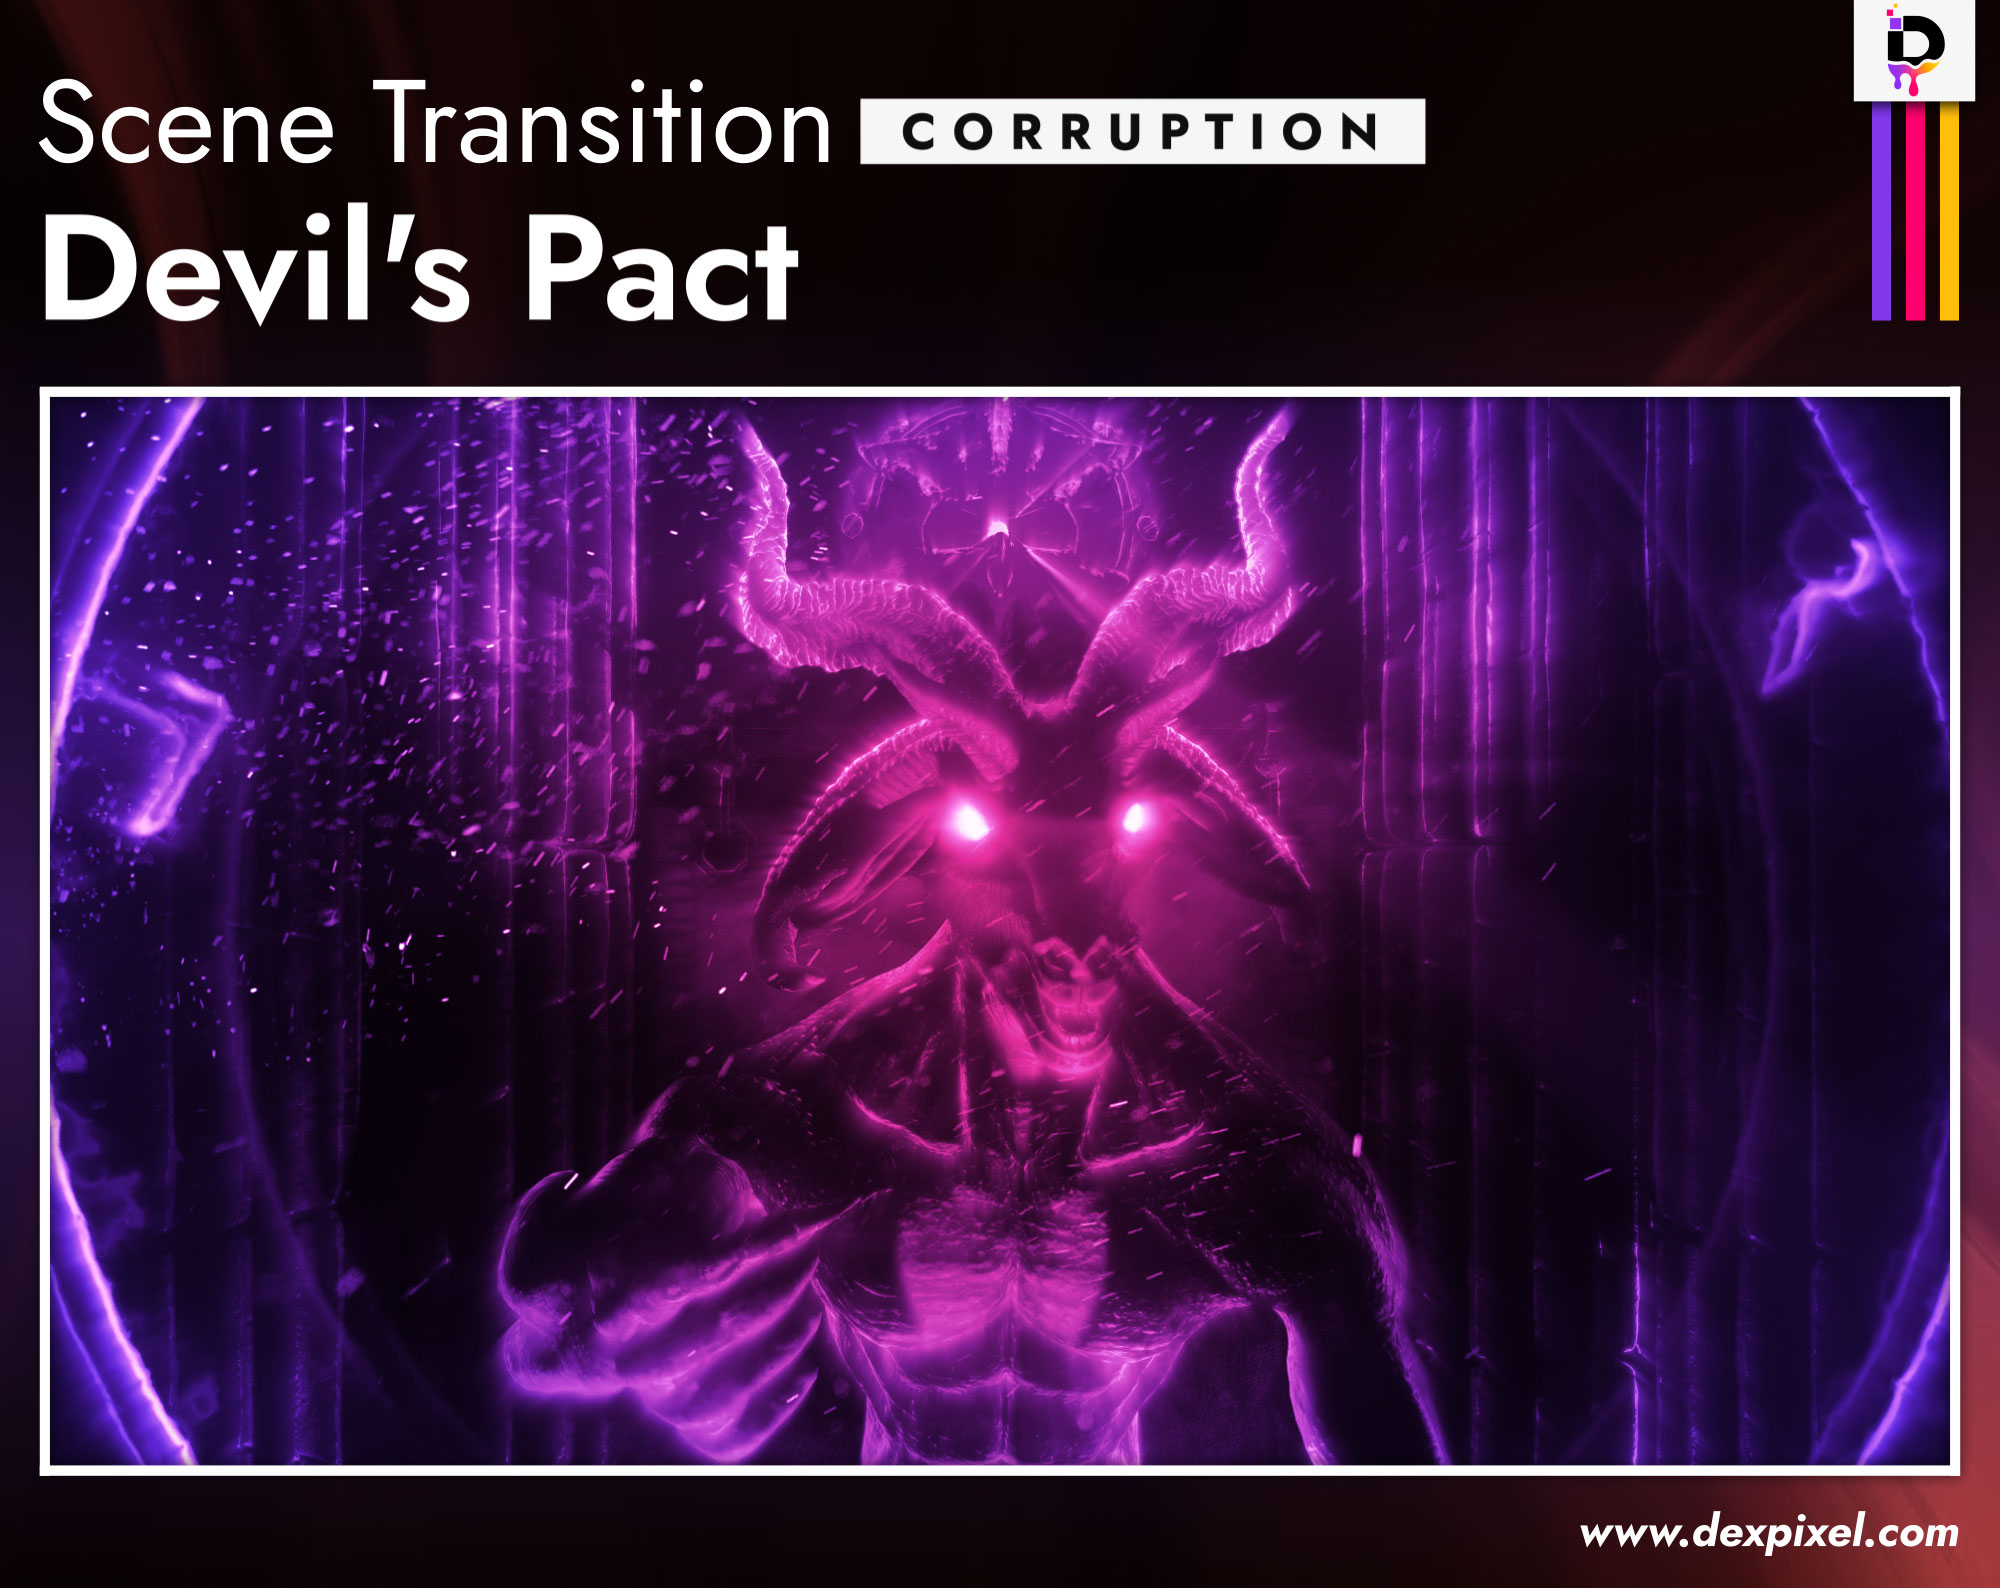 Scene Transition Dexpixel Devils Pact Corruption